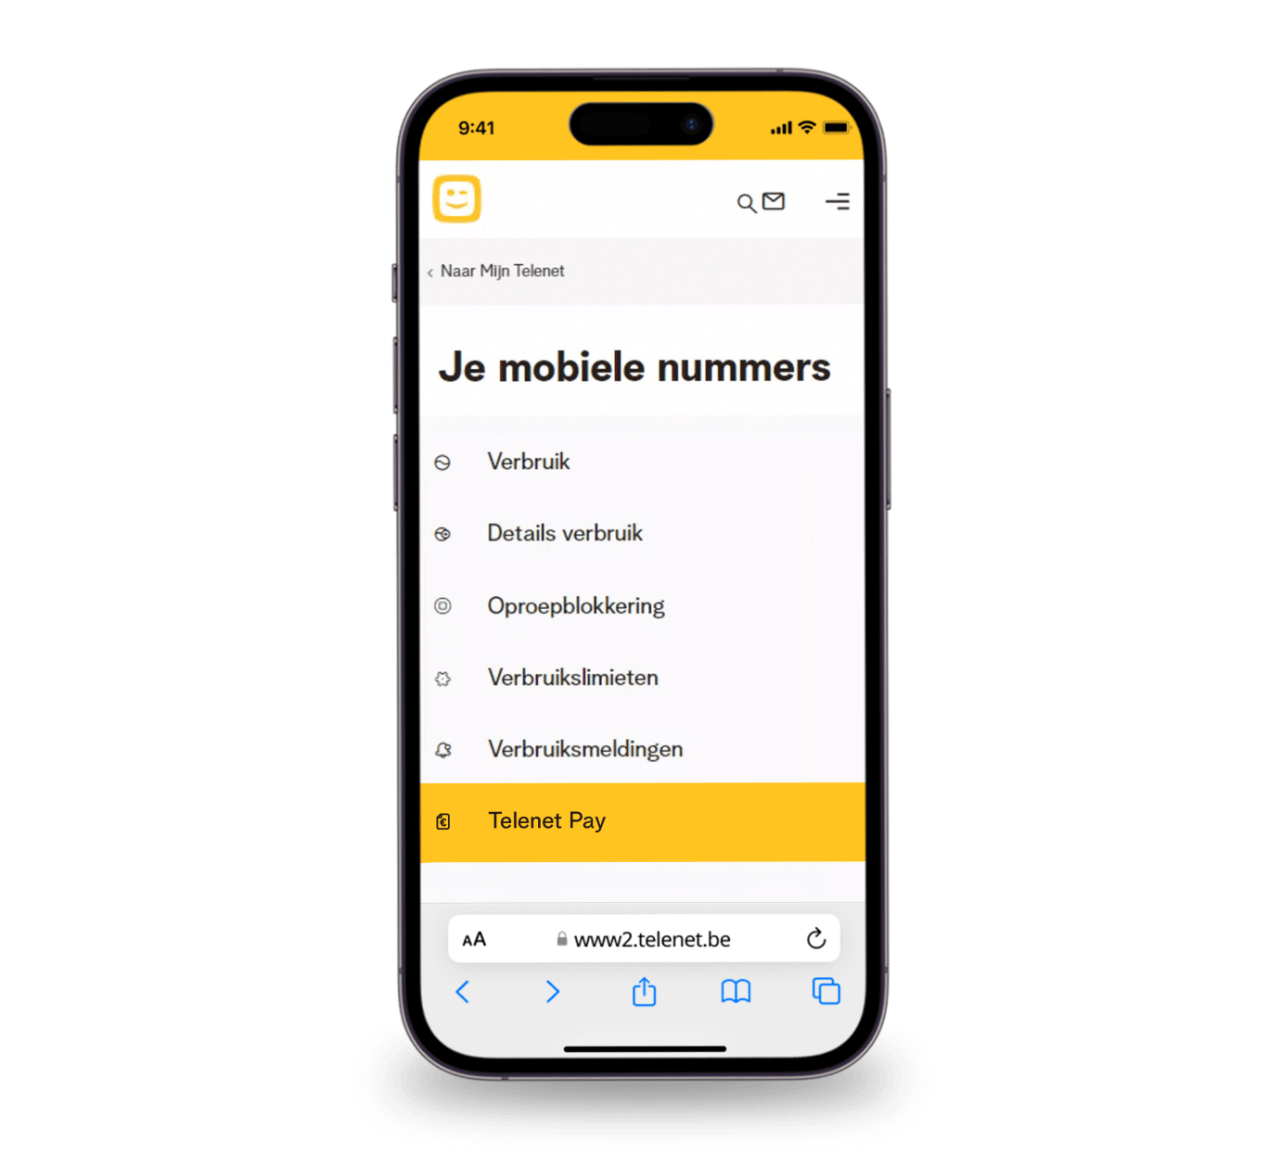 Een smartphone met Mijn Telenet en een overzicht van je mobiele nummers met Telenet Pay als optie.